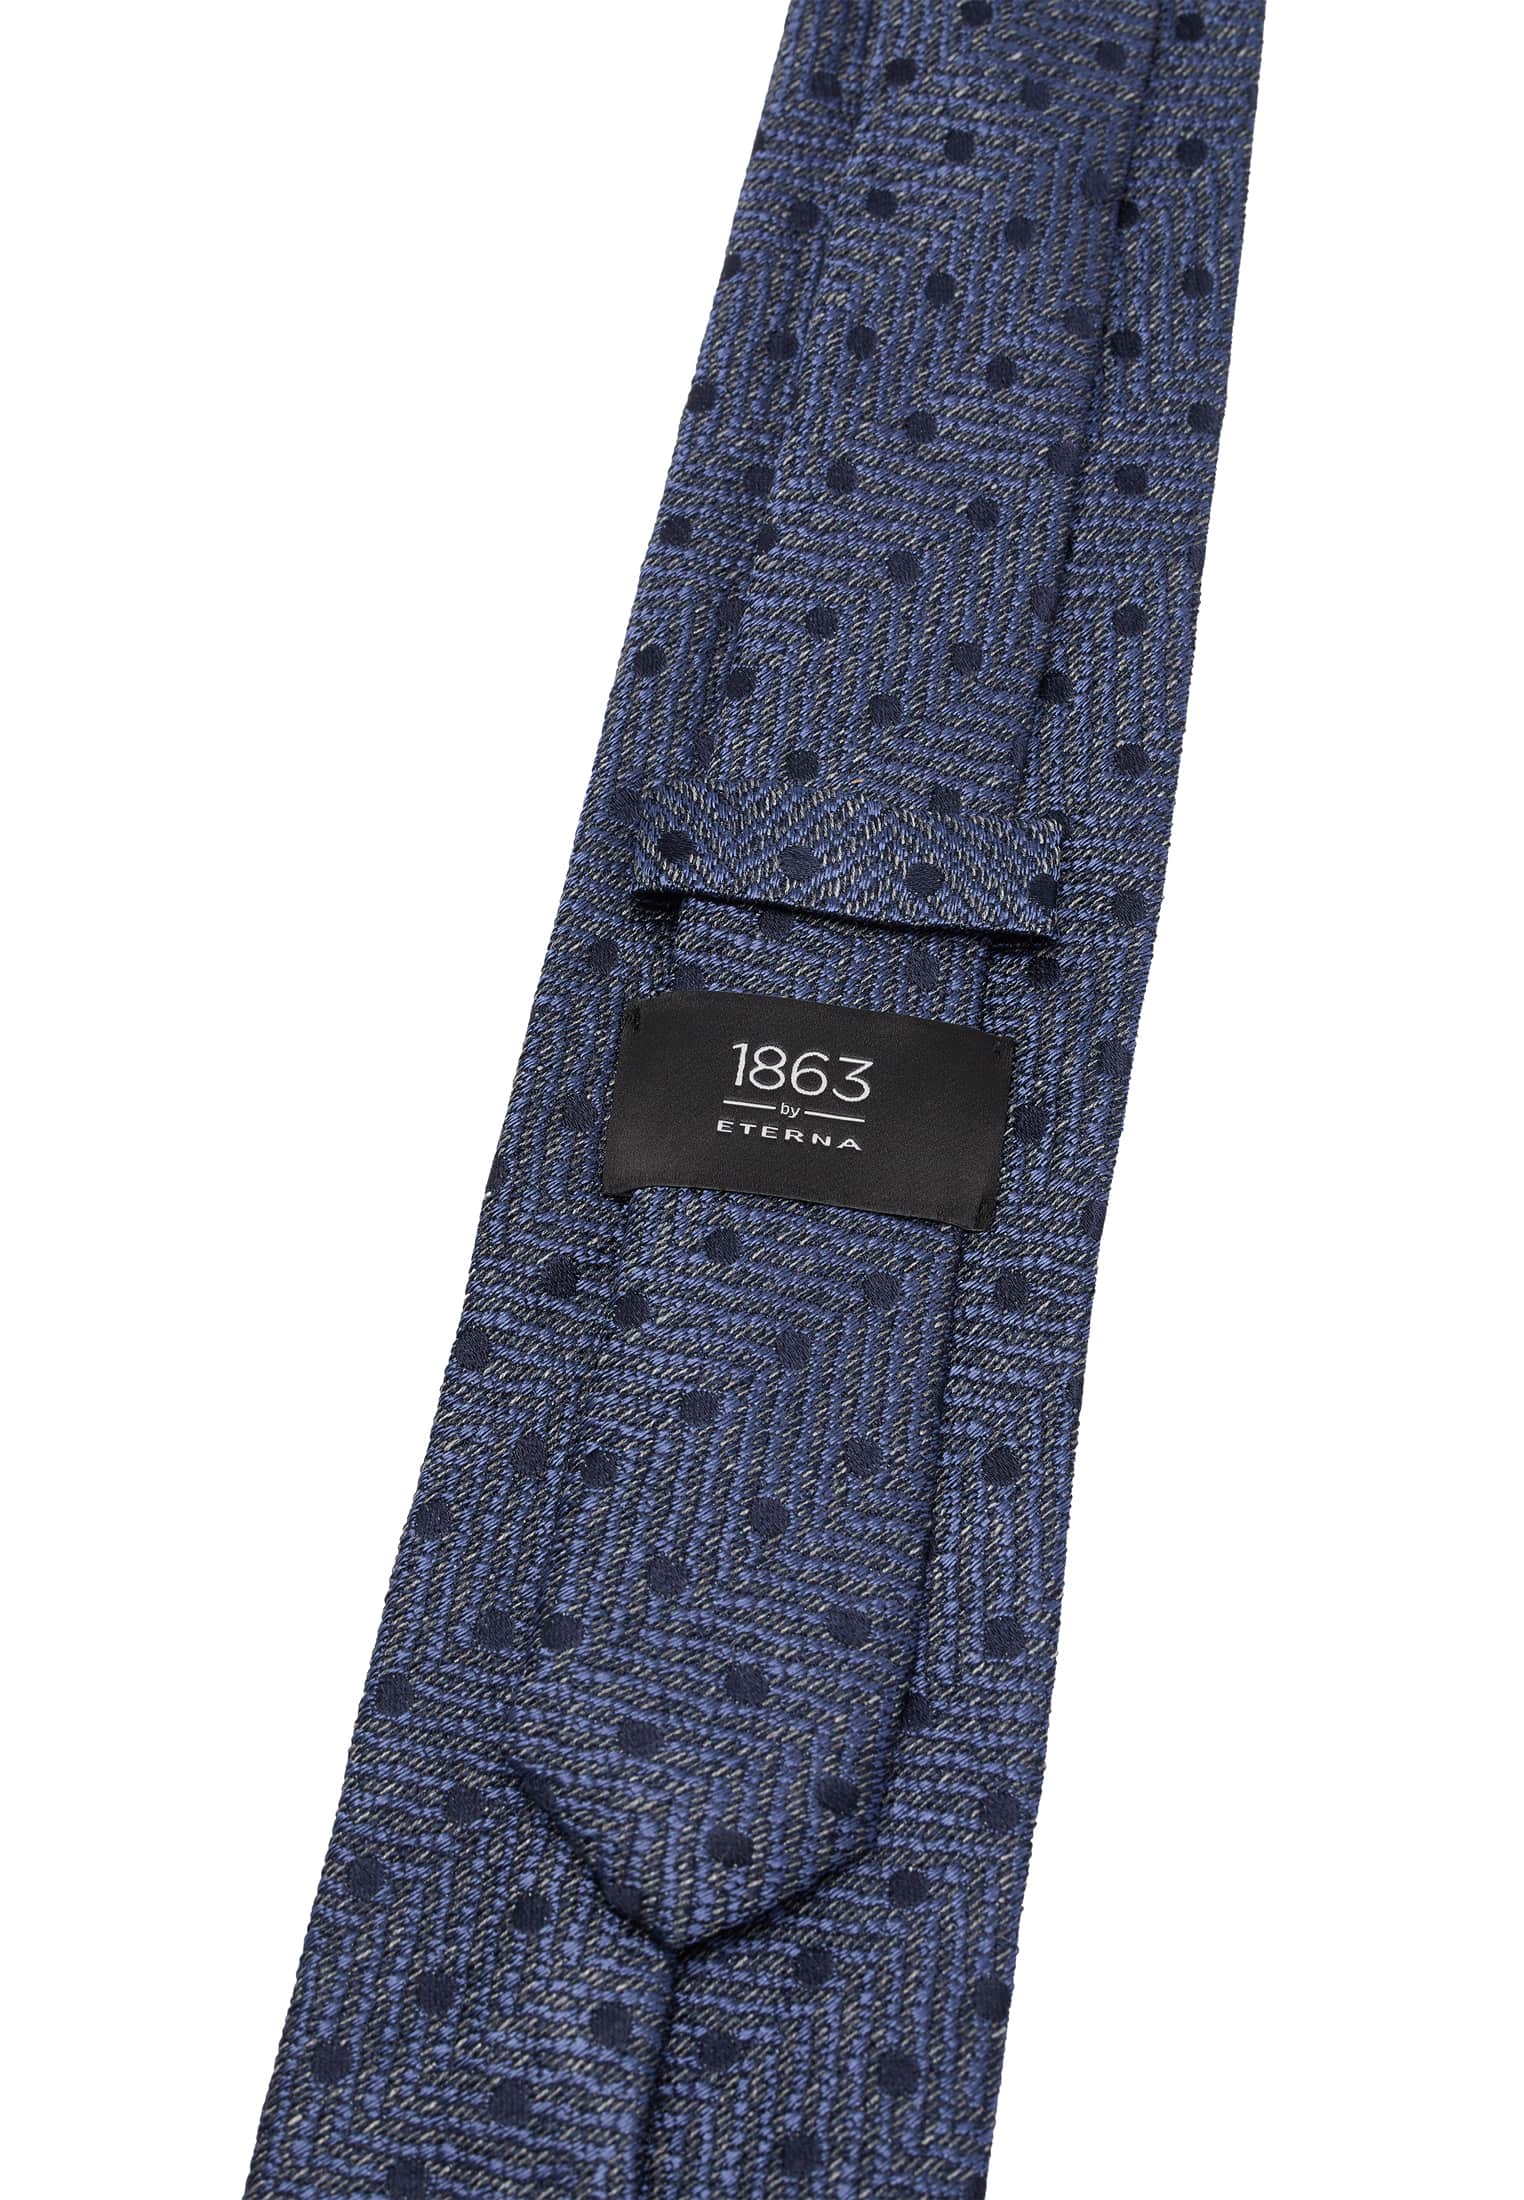 Krawatte in dunkelblau strukturiert